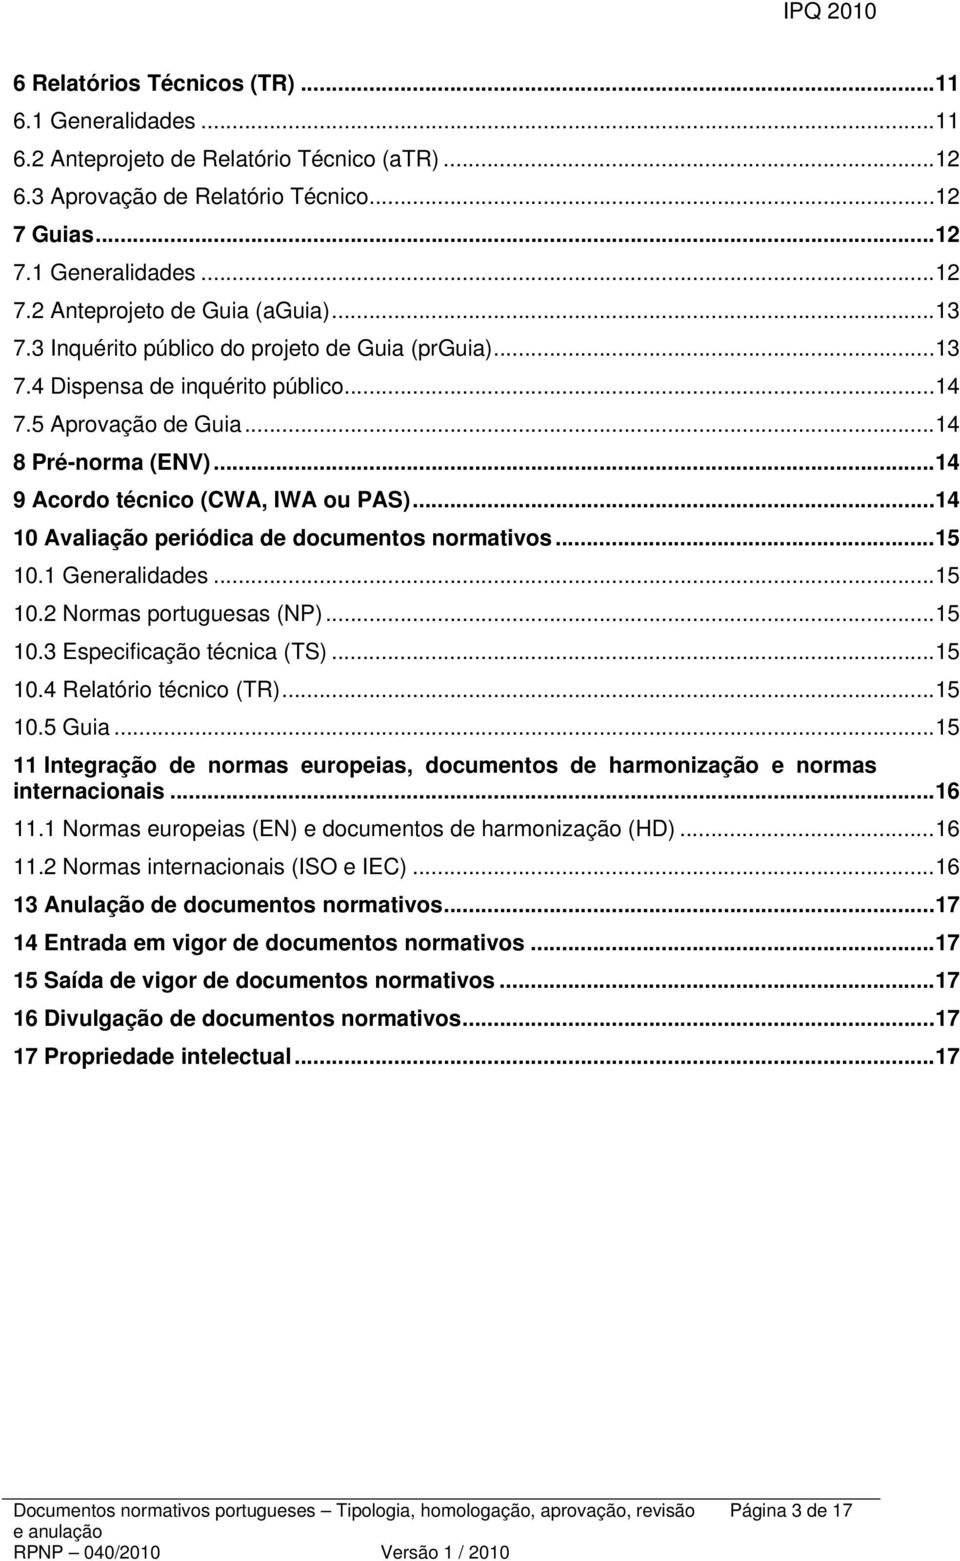 .. 14 10 Avaliação periódica de documentos normativos... 15 10.1 Generalidades... 15 10.2 Normas portuguesas (NP)... 15 10.3 Especificação técnica (TS)... 15 10.4 Relatório técnico (TR)... 15 10.5 Guia.